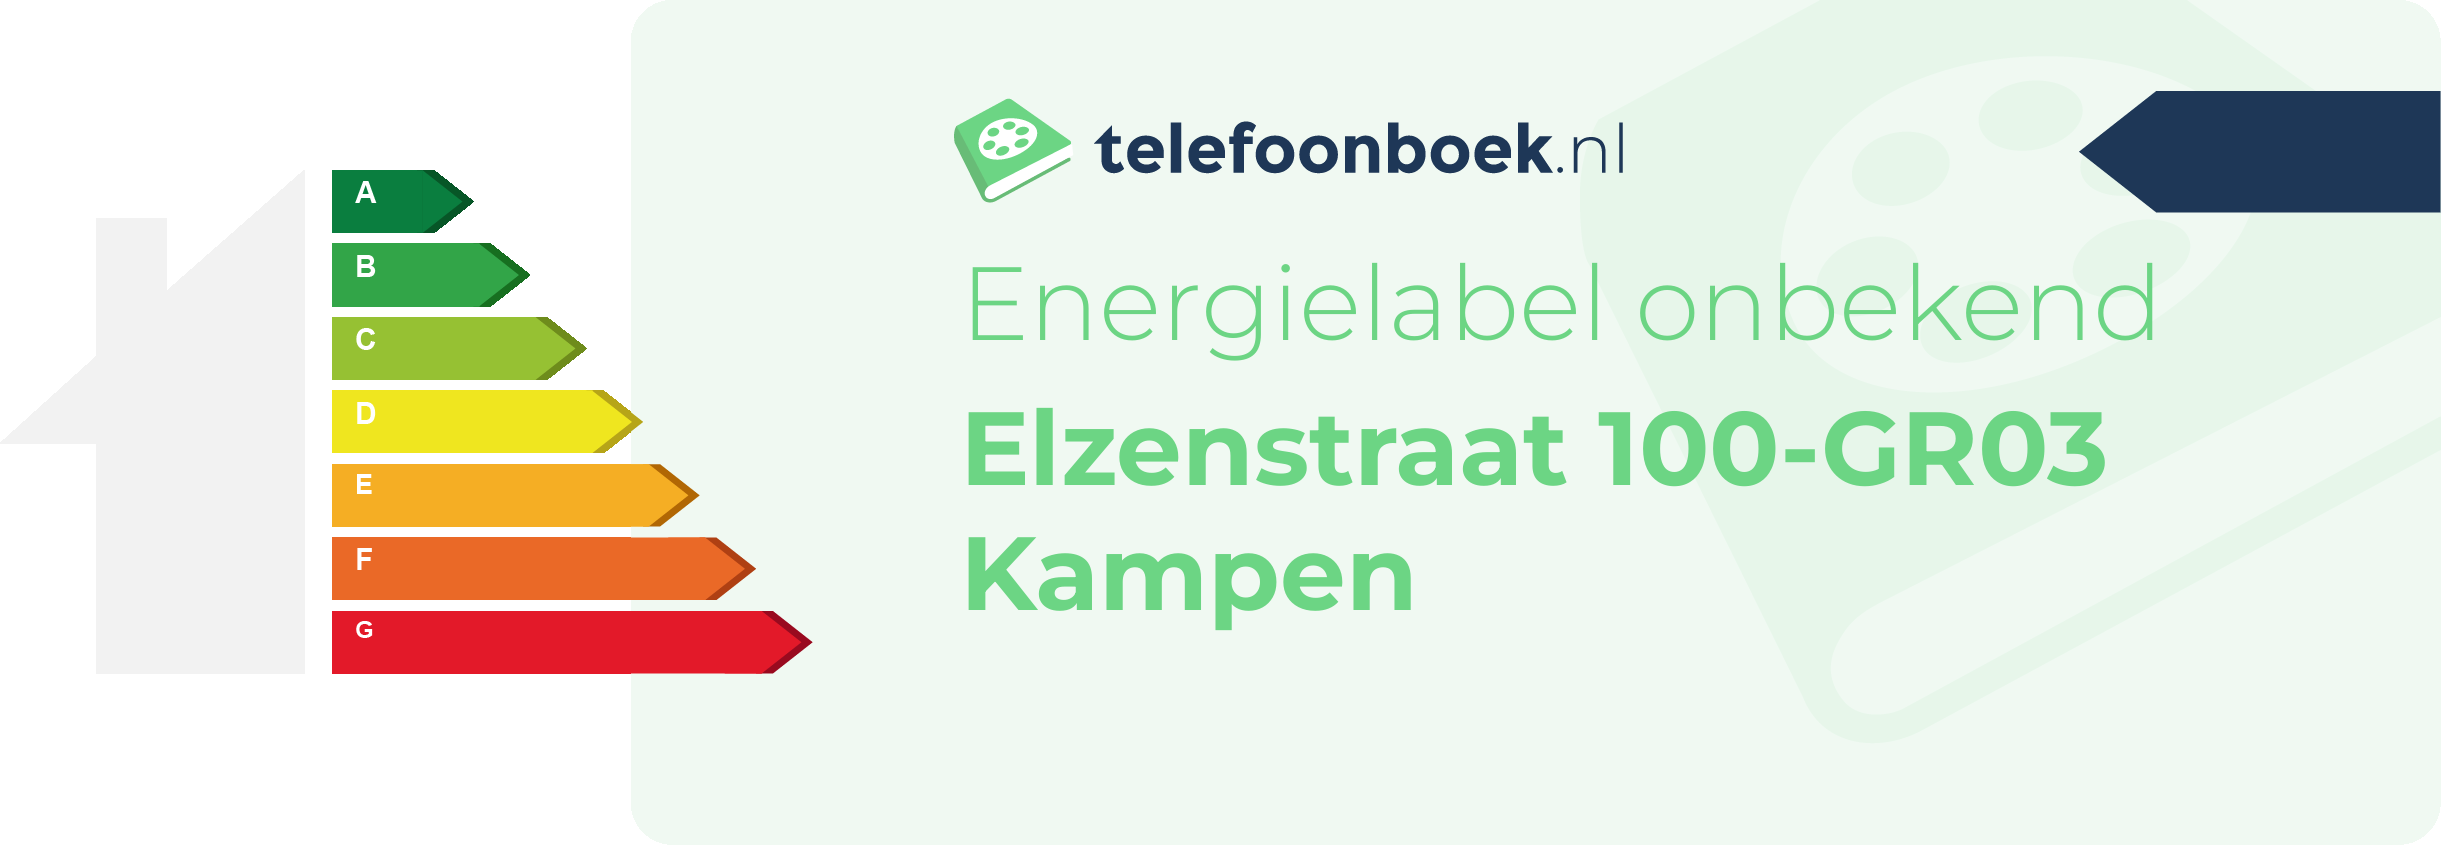 Energielabel Elzenstraat 100-GR03 Kampen